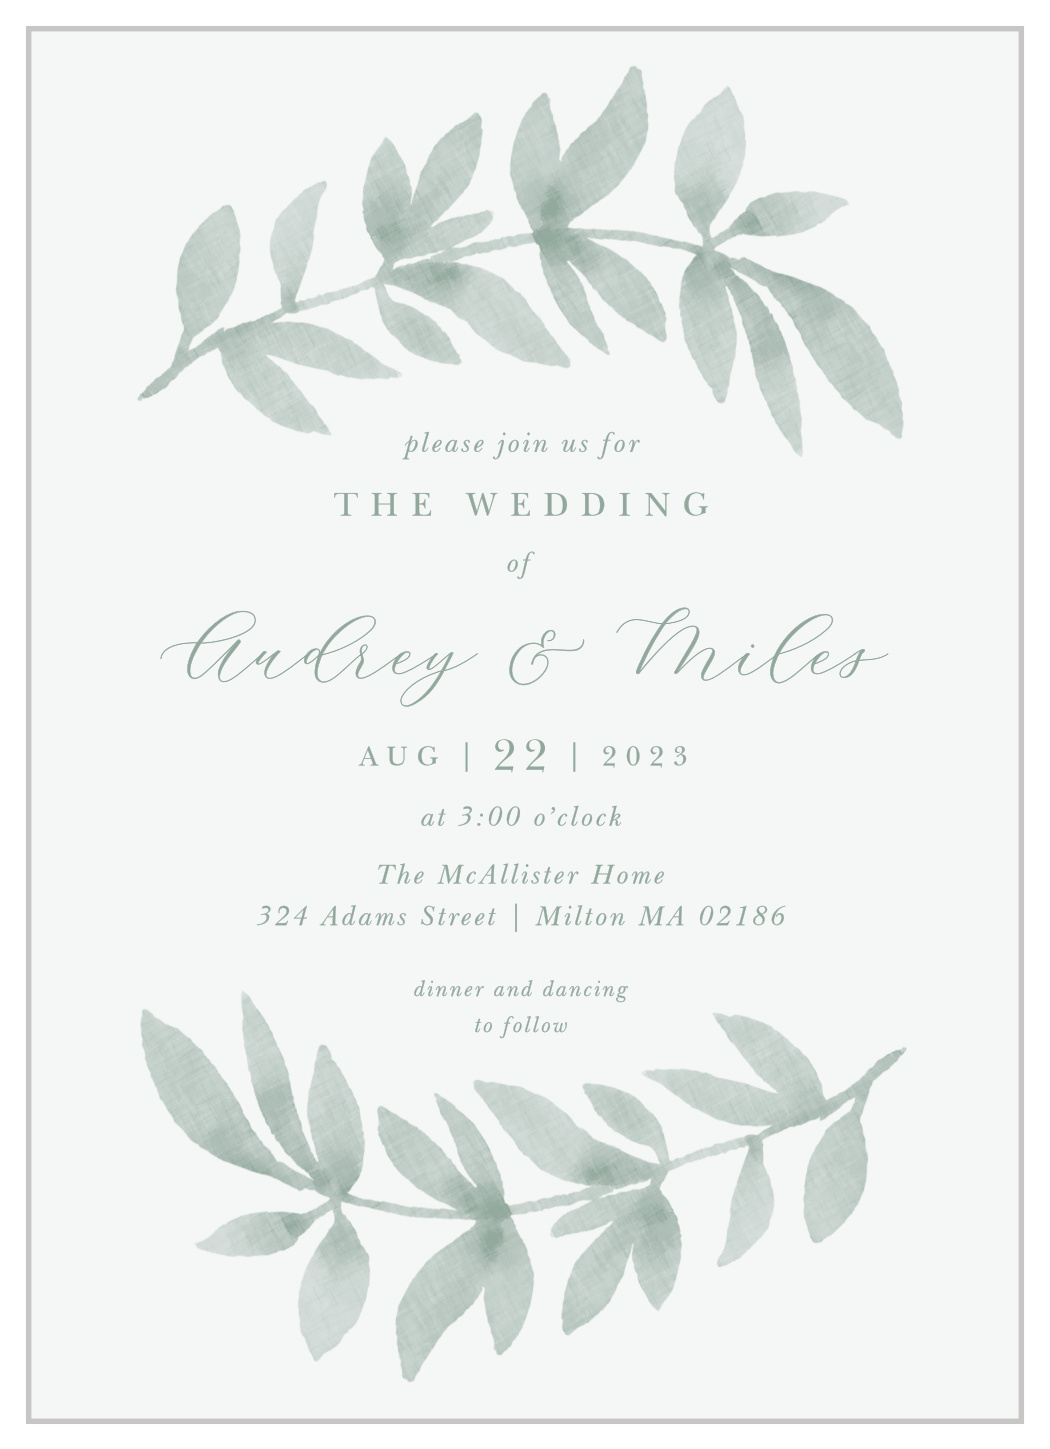 Flowing Ferns Wedding Invitations